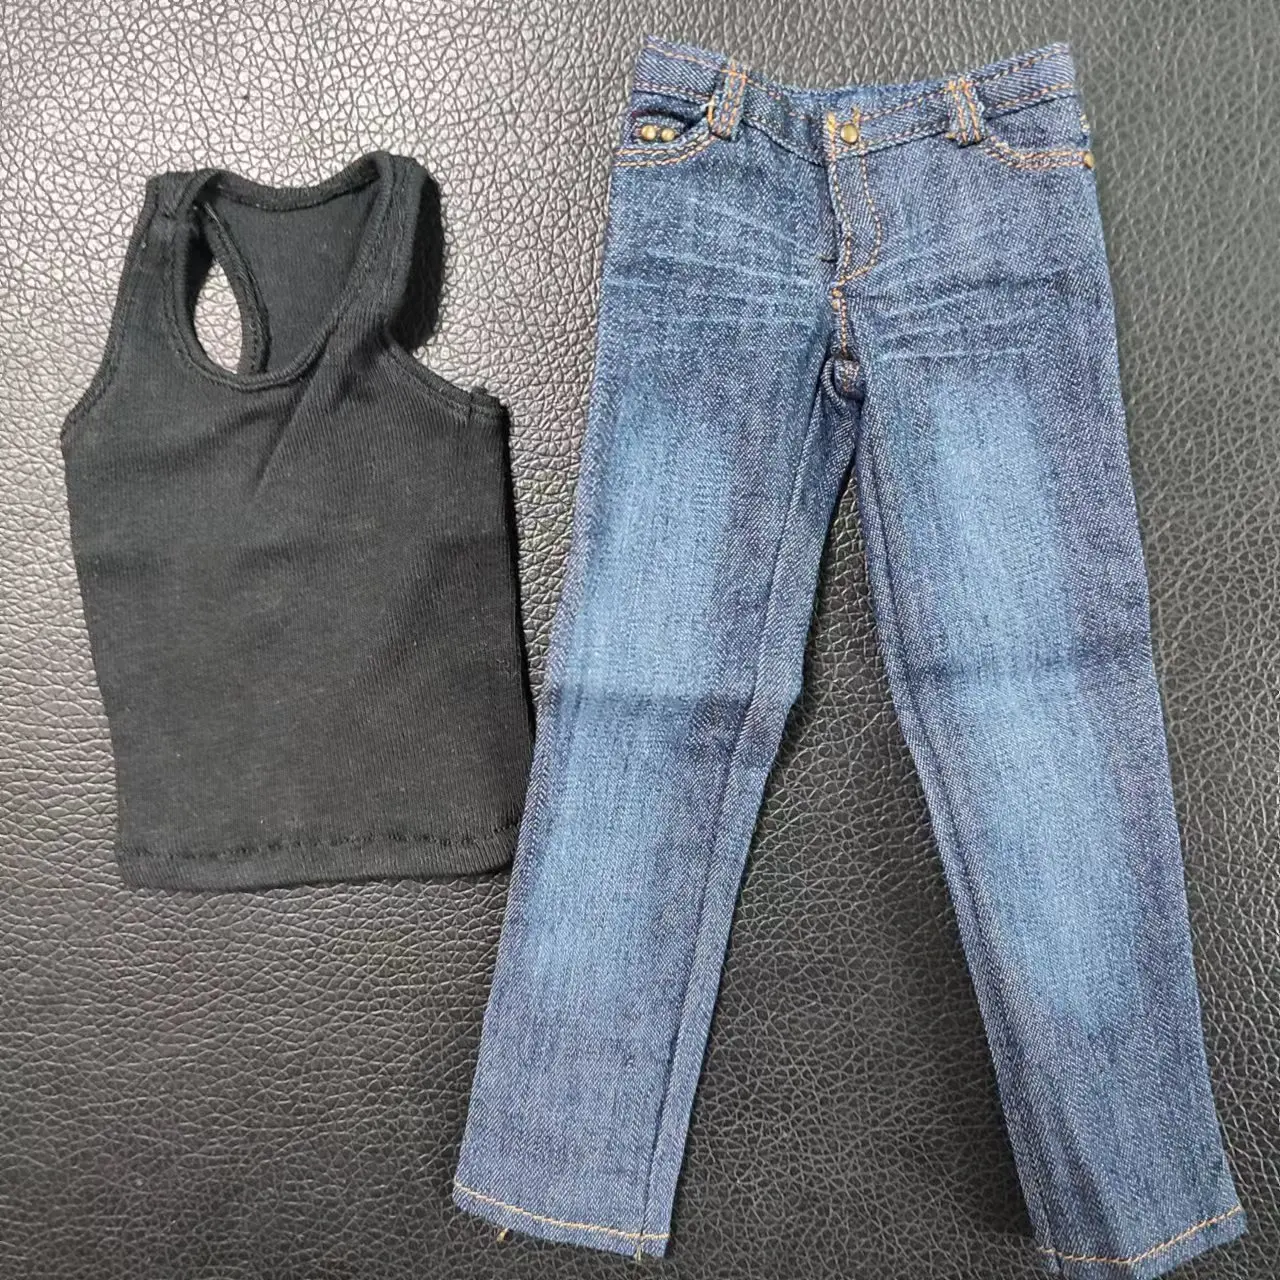 В магазине Комплект одежды для мужской фигуры в масштабе 1/6, Свободные джинсы, жилет, модель аксессуаров для 12-дюймовой мускулистой фигуры M35